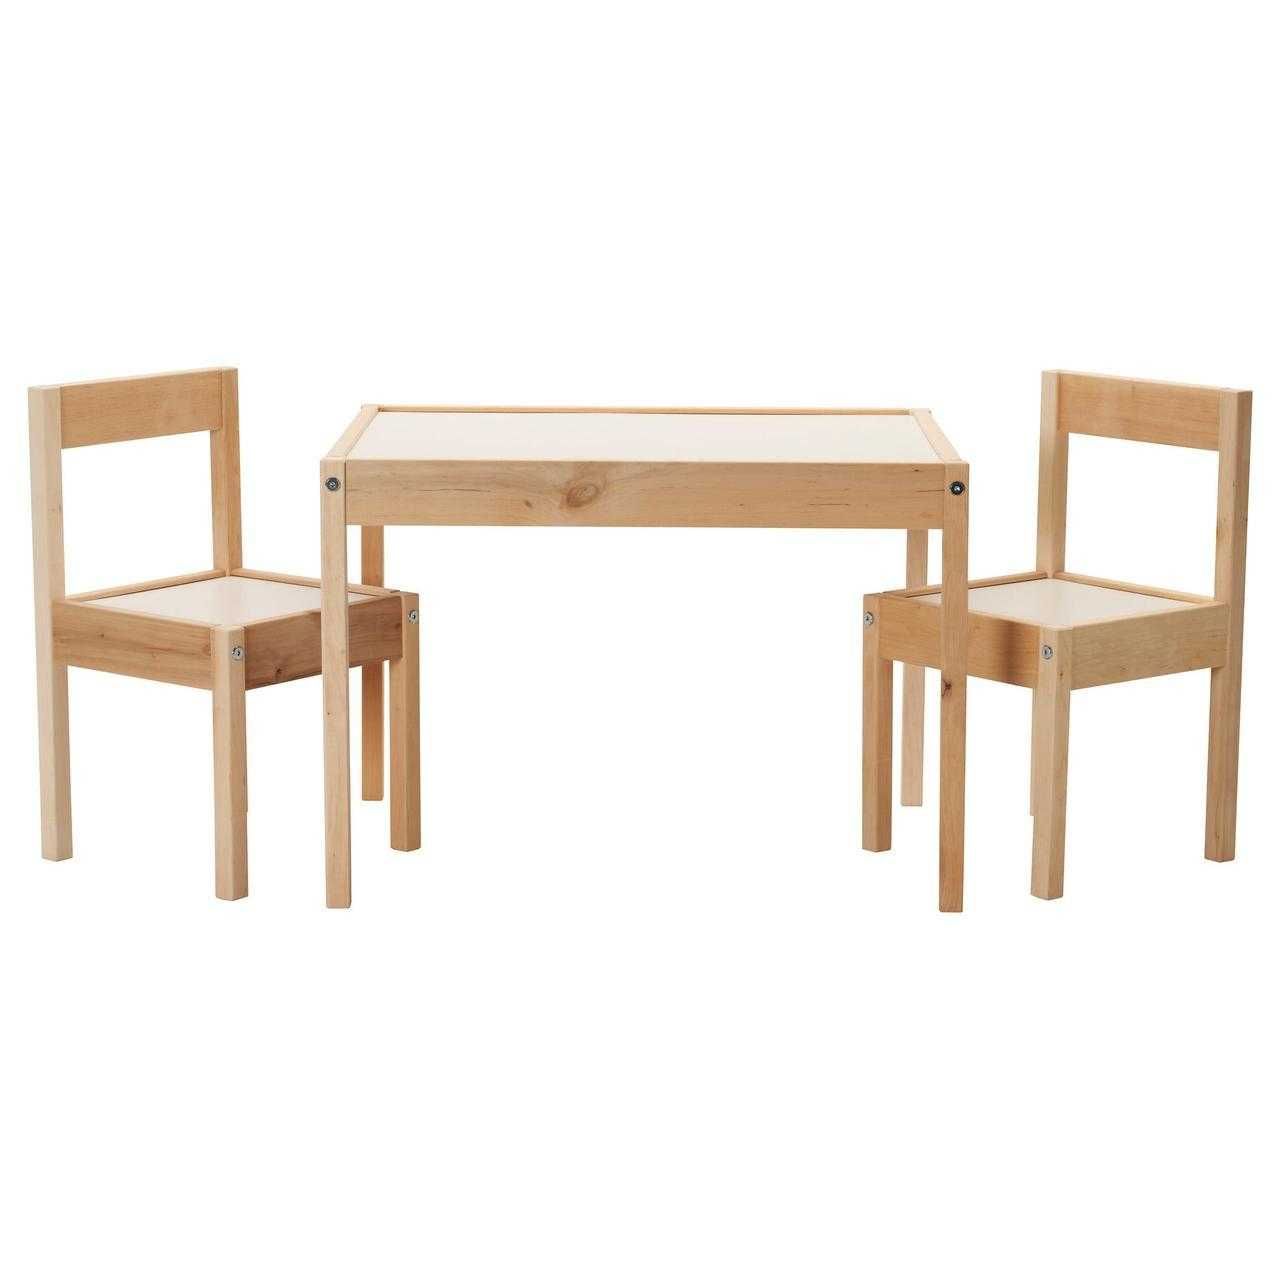 Детский деревянный стол и 2 стульчика IKEA столик для детей